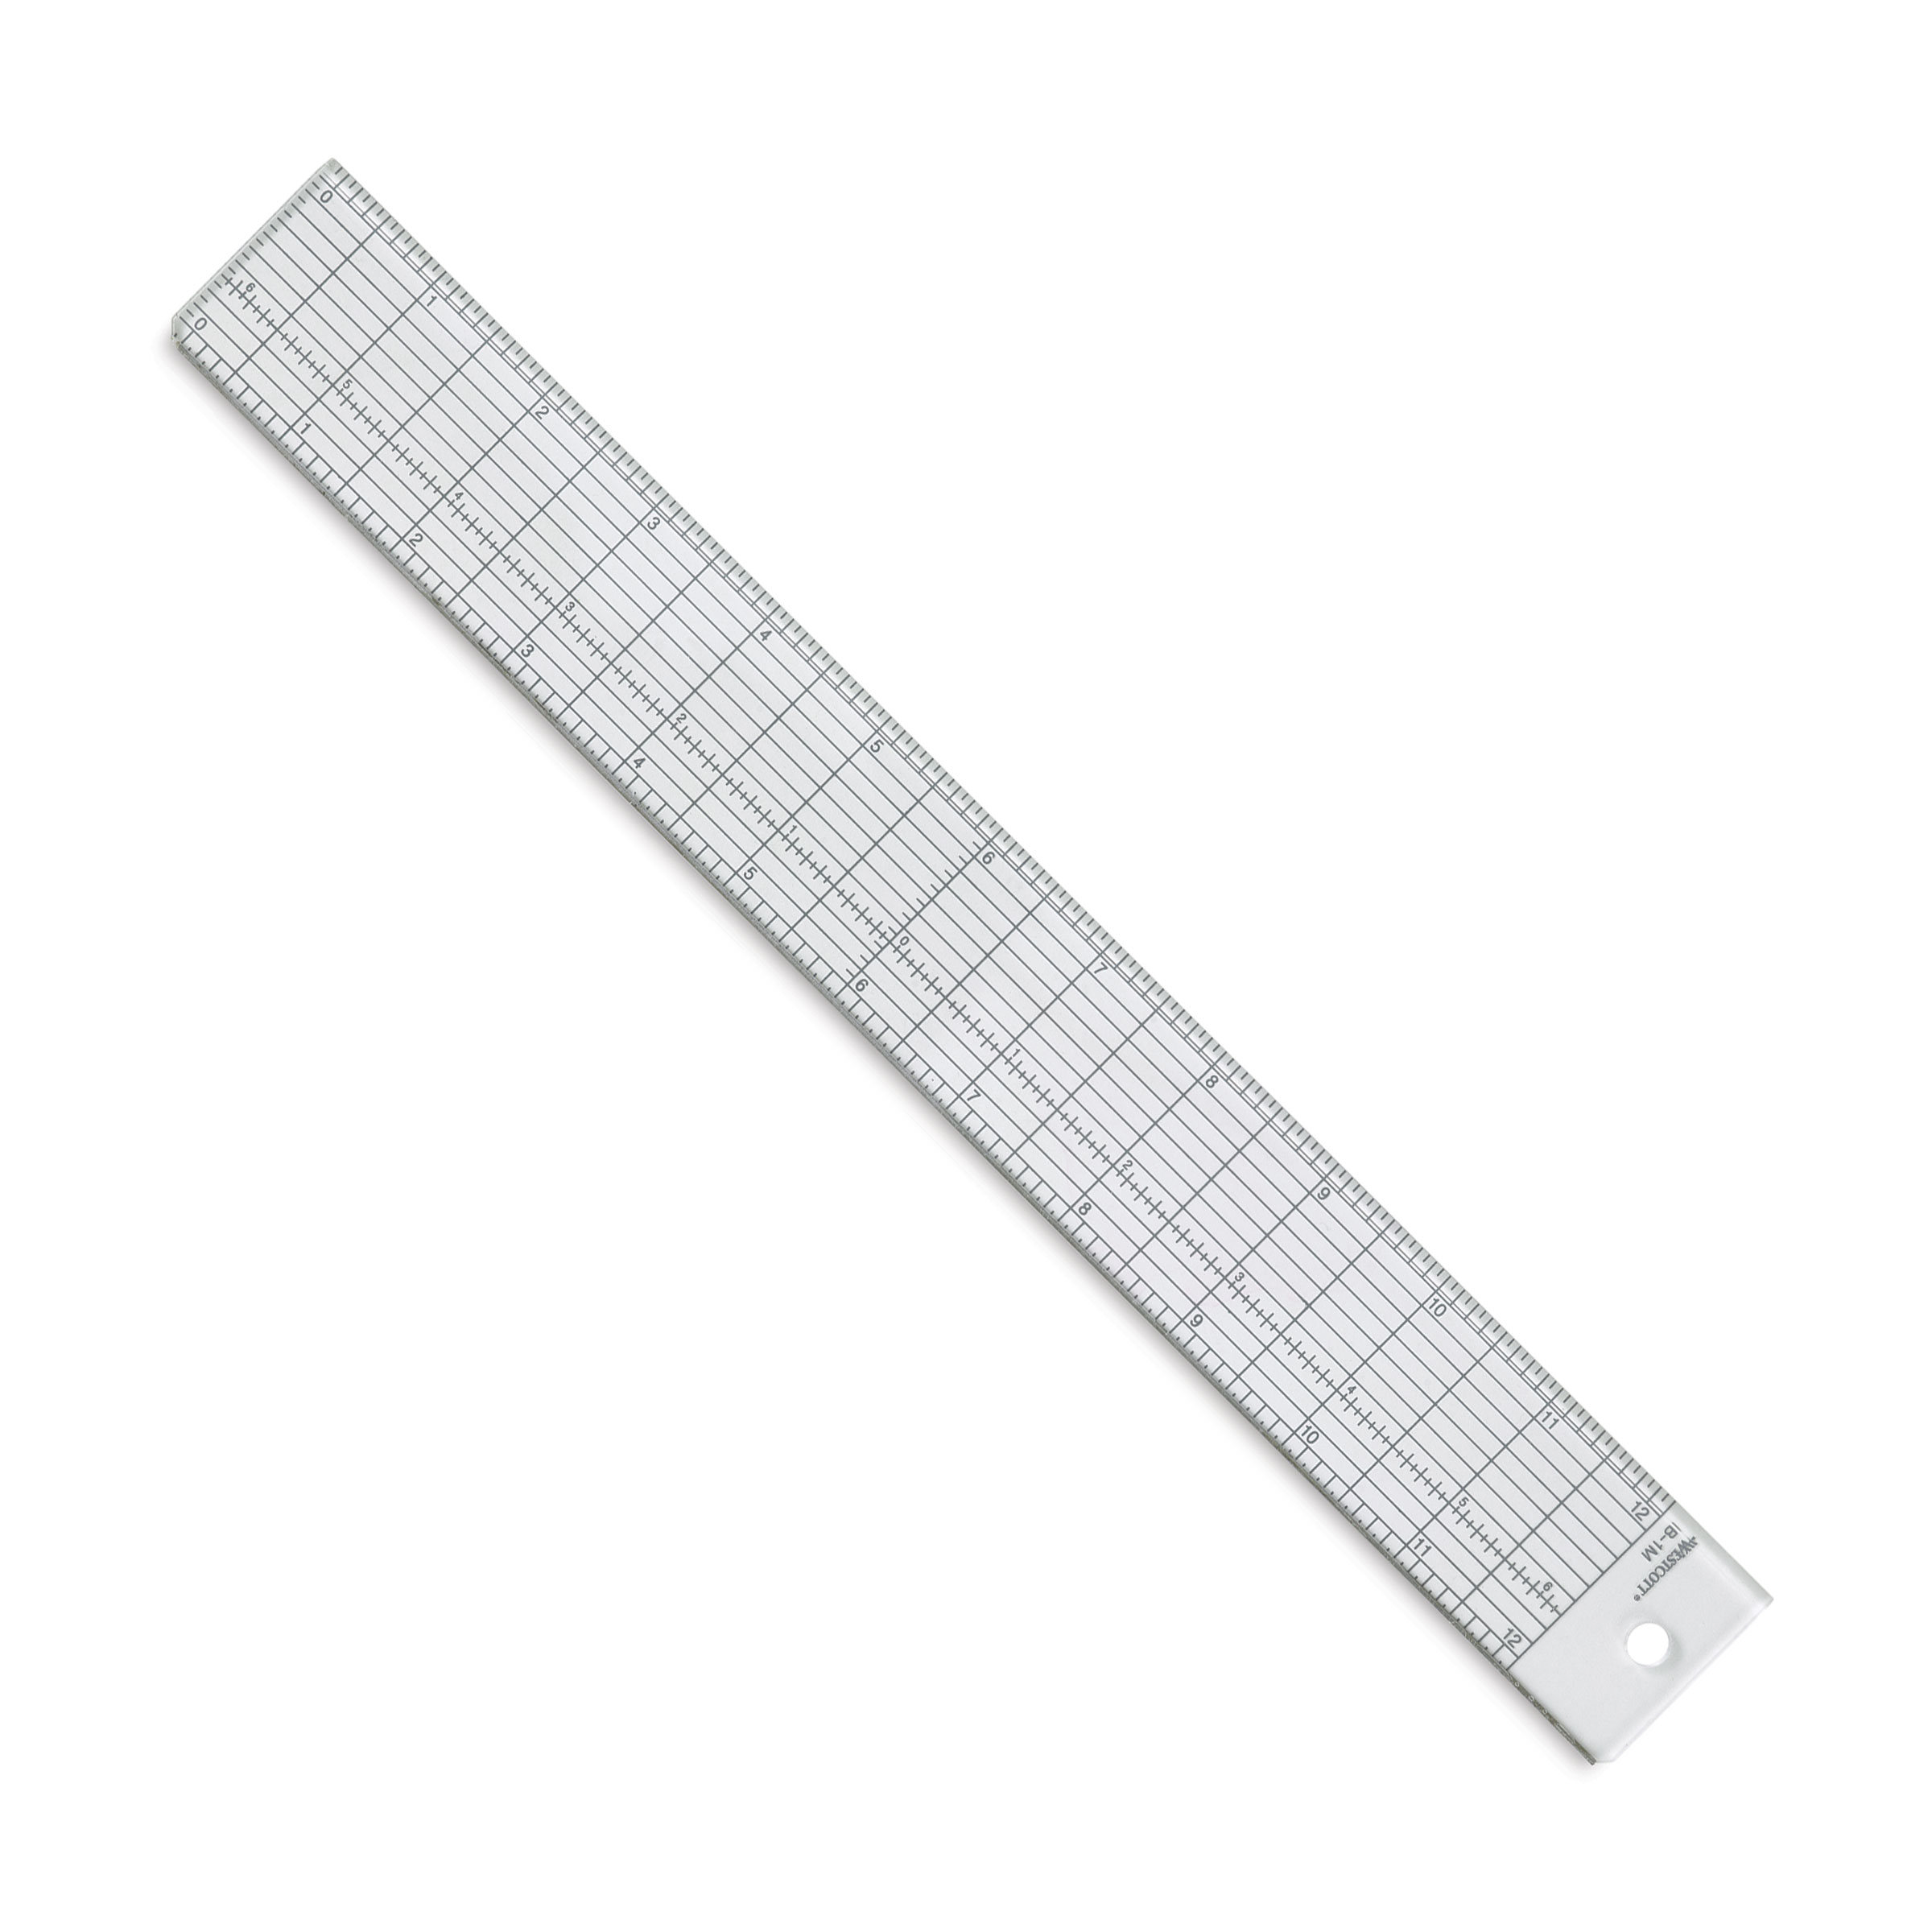 Westcott 18 6-inch Flexible Metric Ruler for sale online